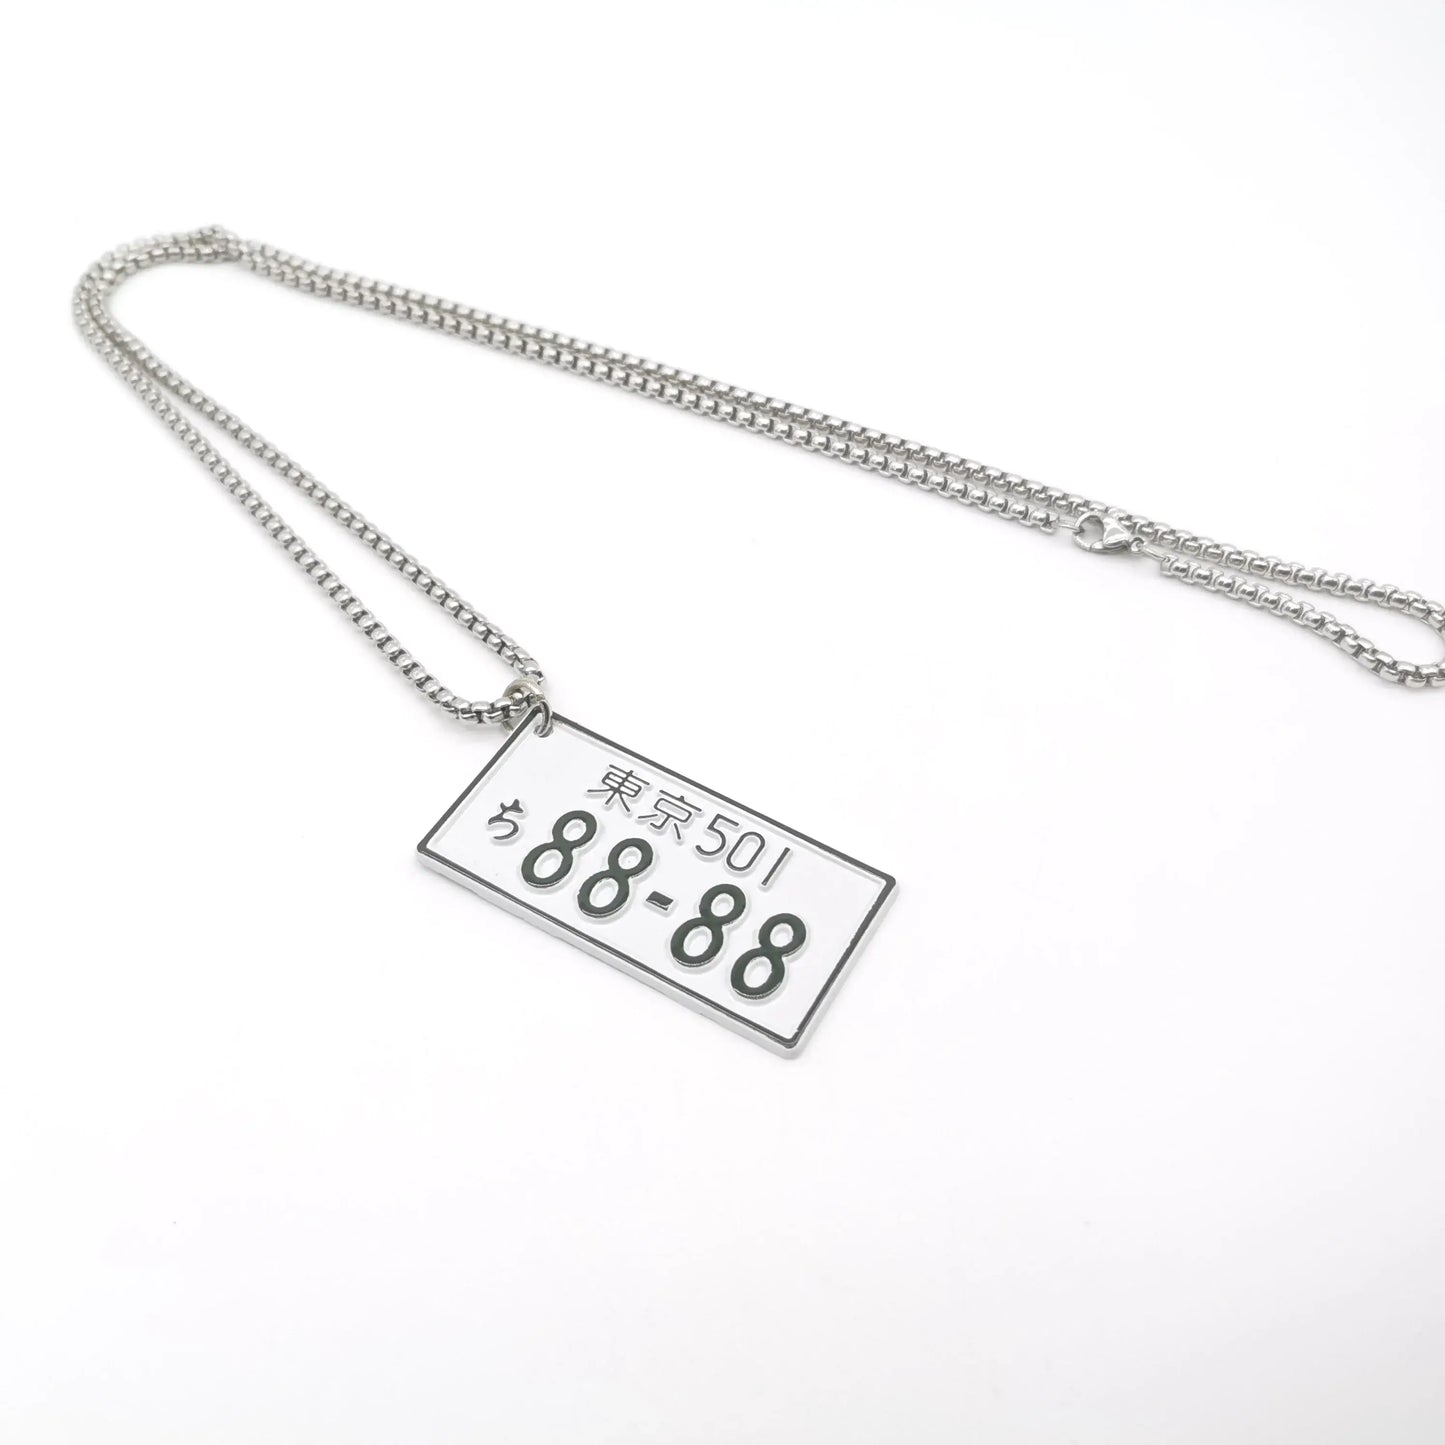 88 - 88 JDM Plate Necklace